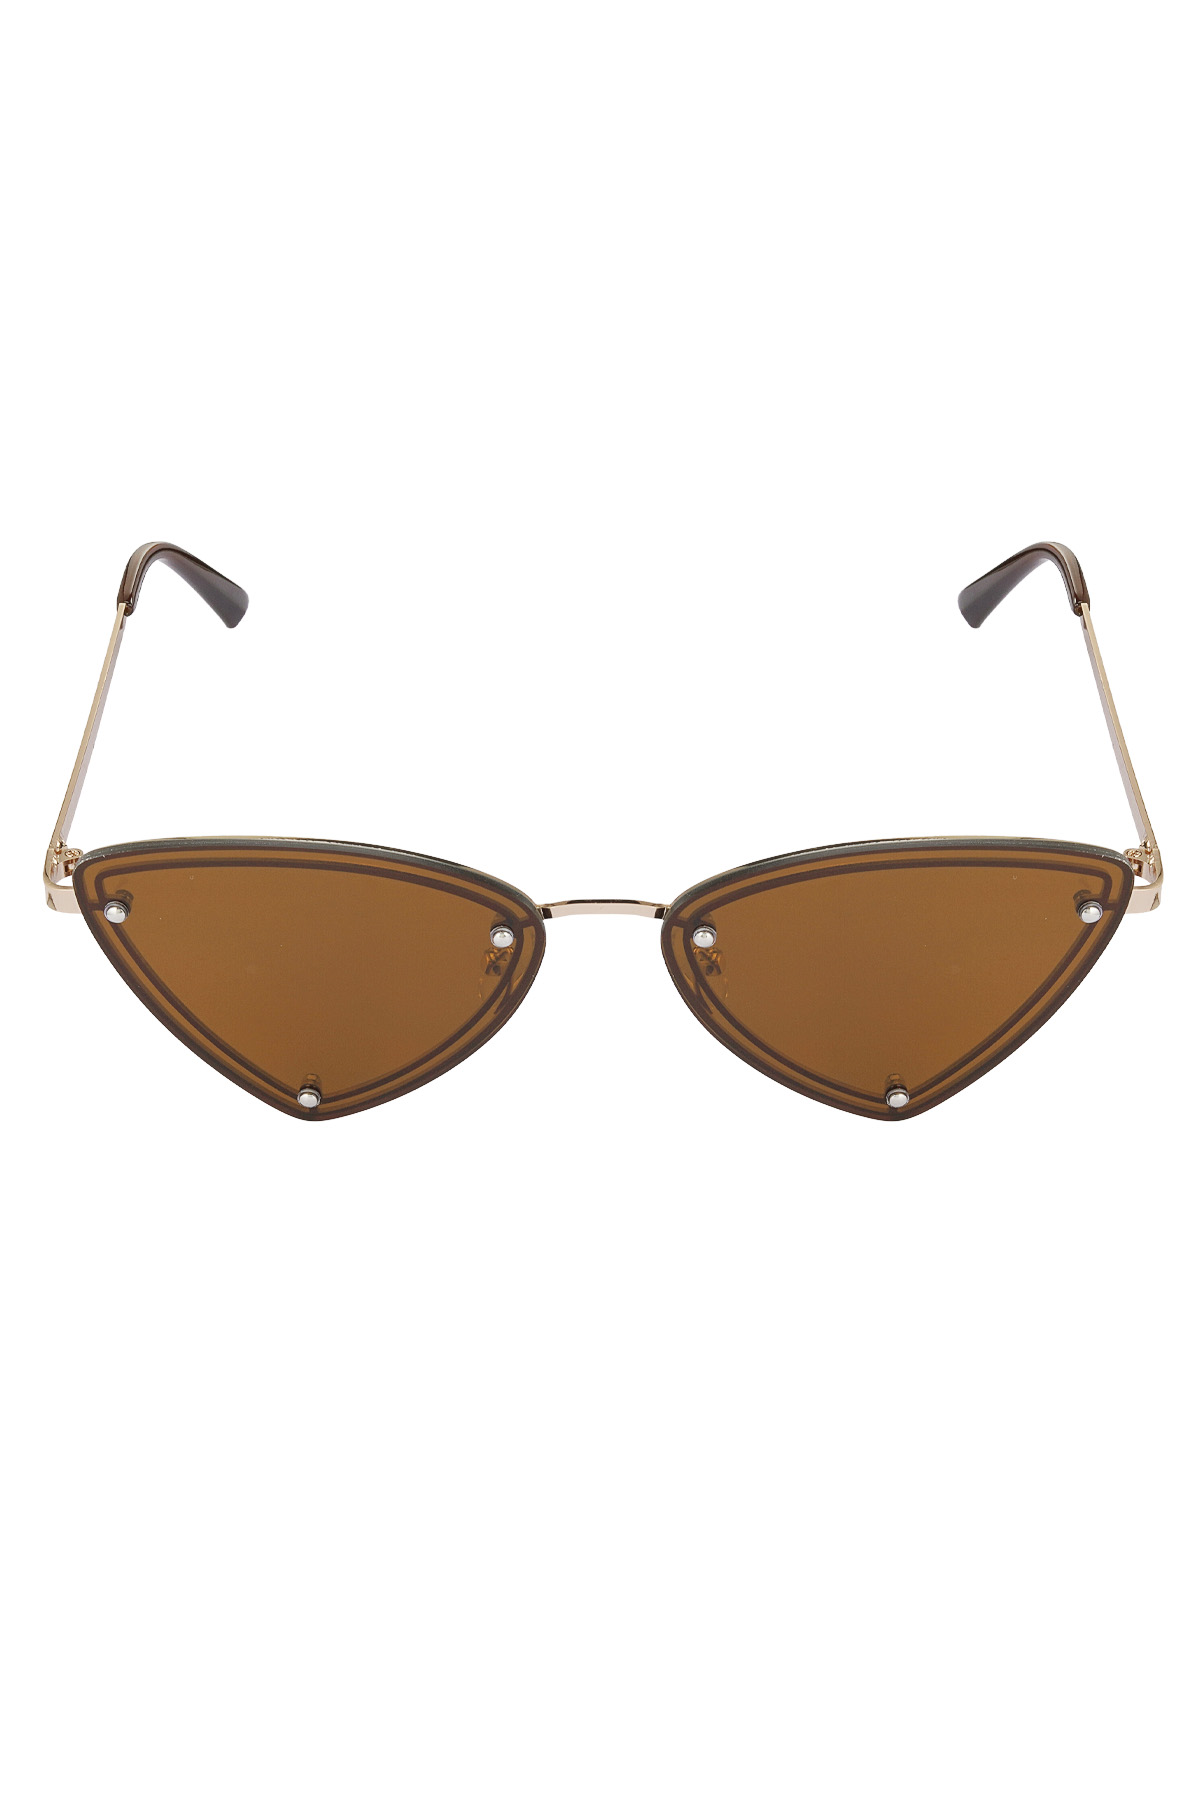 Retro party sunglasses - brown h5 Picture4